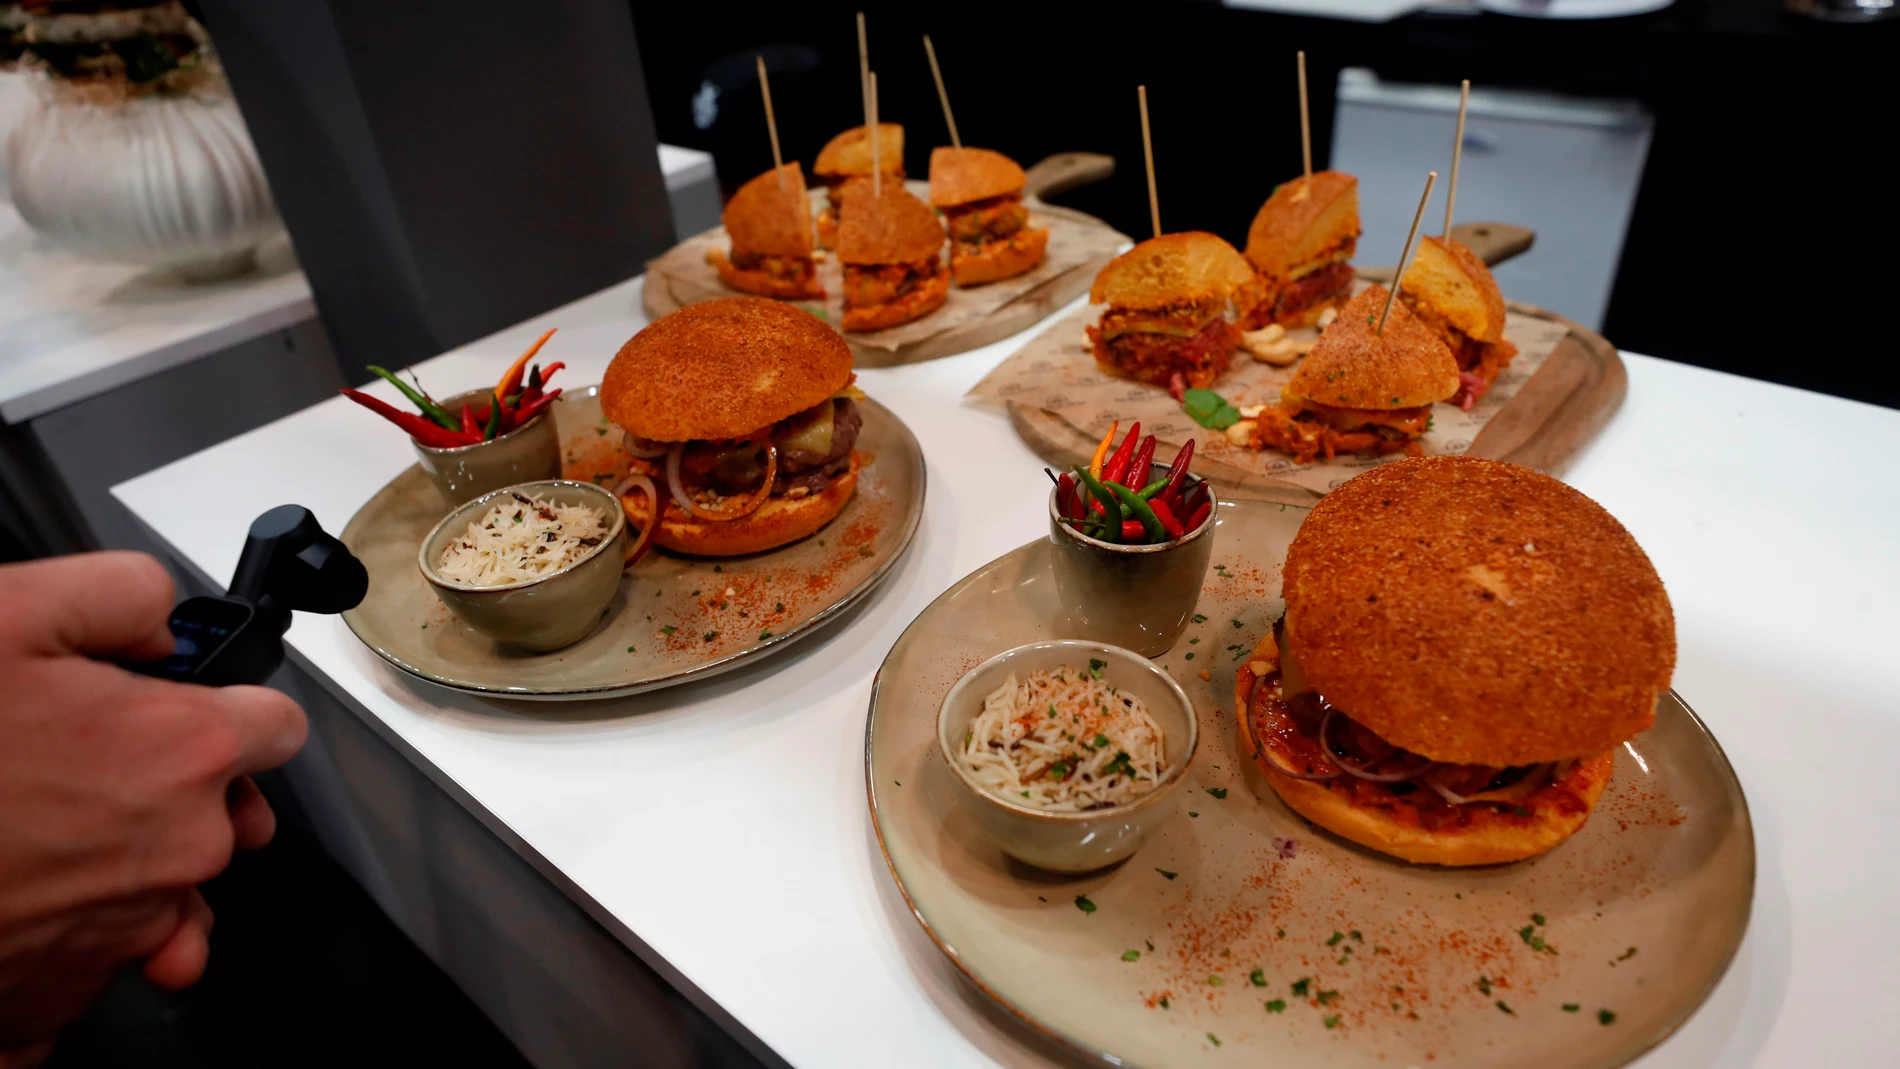 Participantes en el concurso en el que destacados cocineros lucharán por conseguir el premio al mejor chef de hamburguesas, durante el Salón Gourmets que se celebra en Madrid